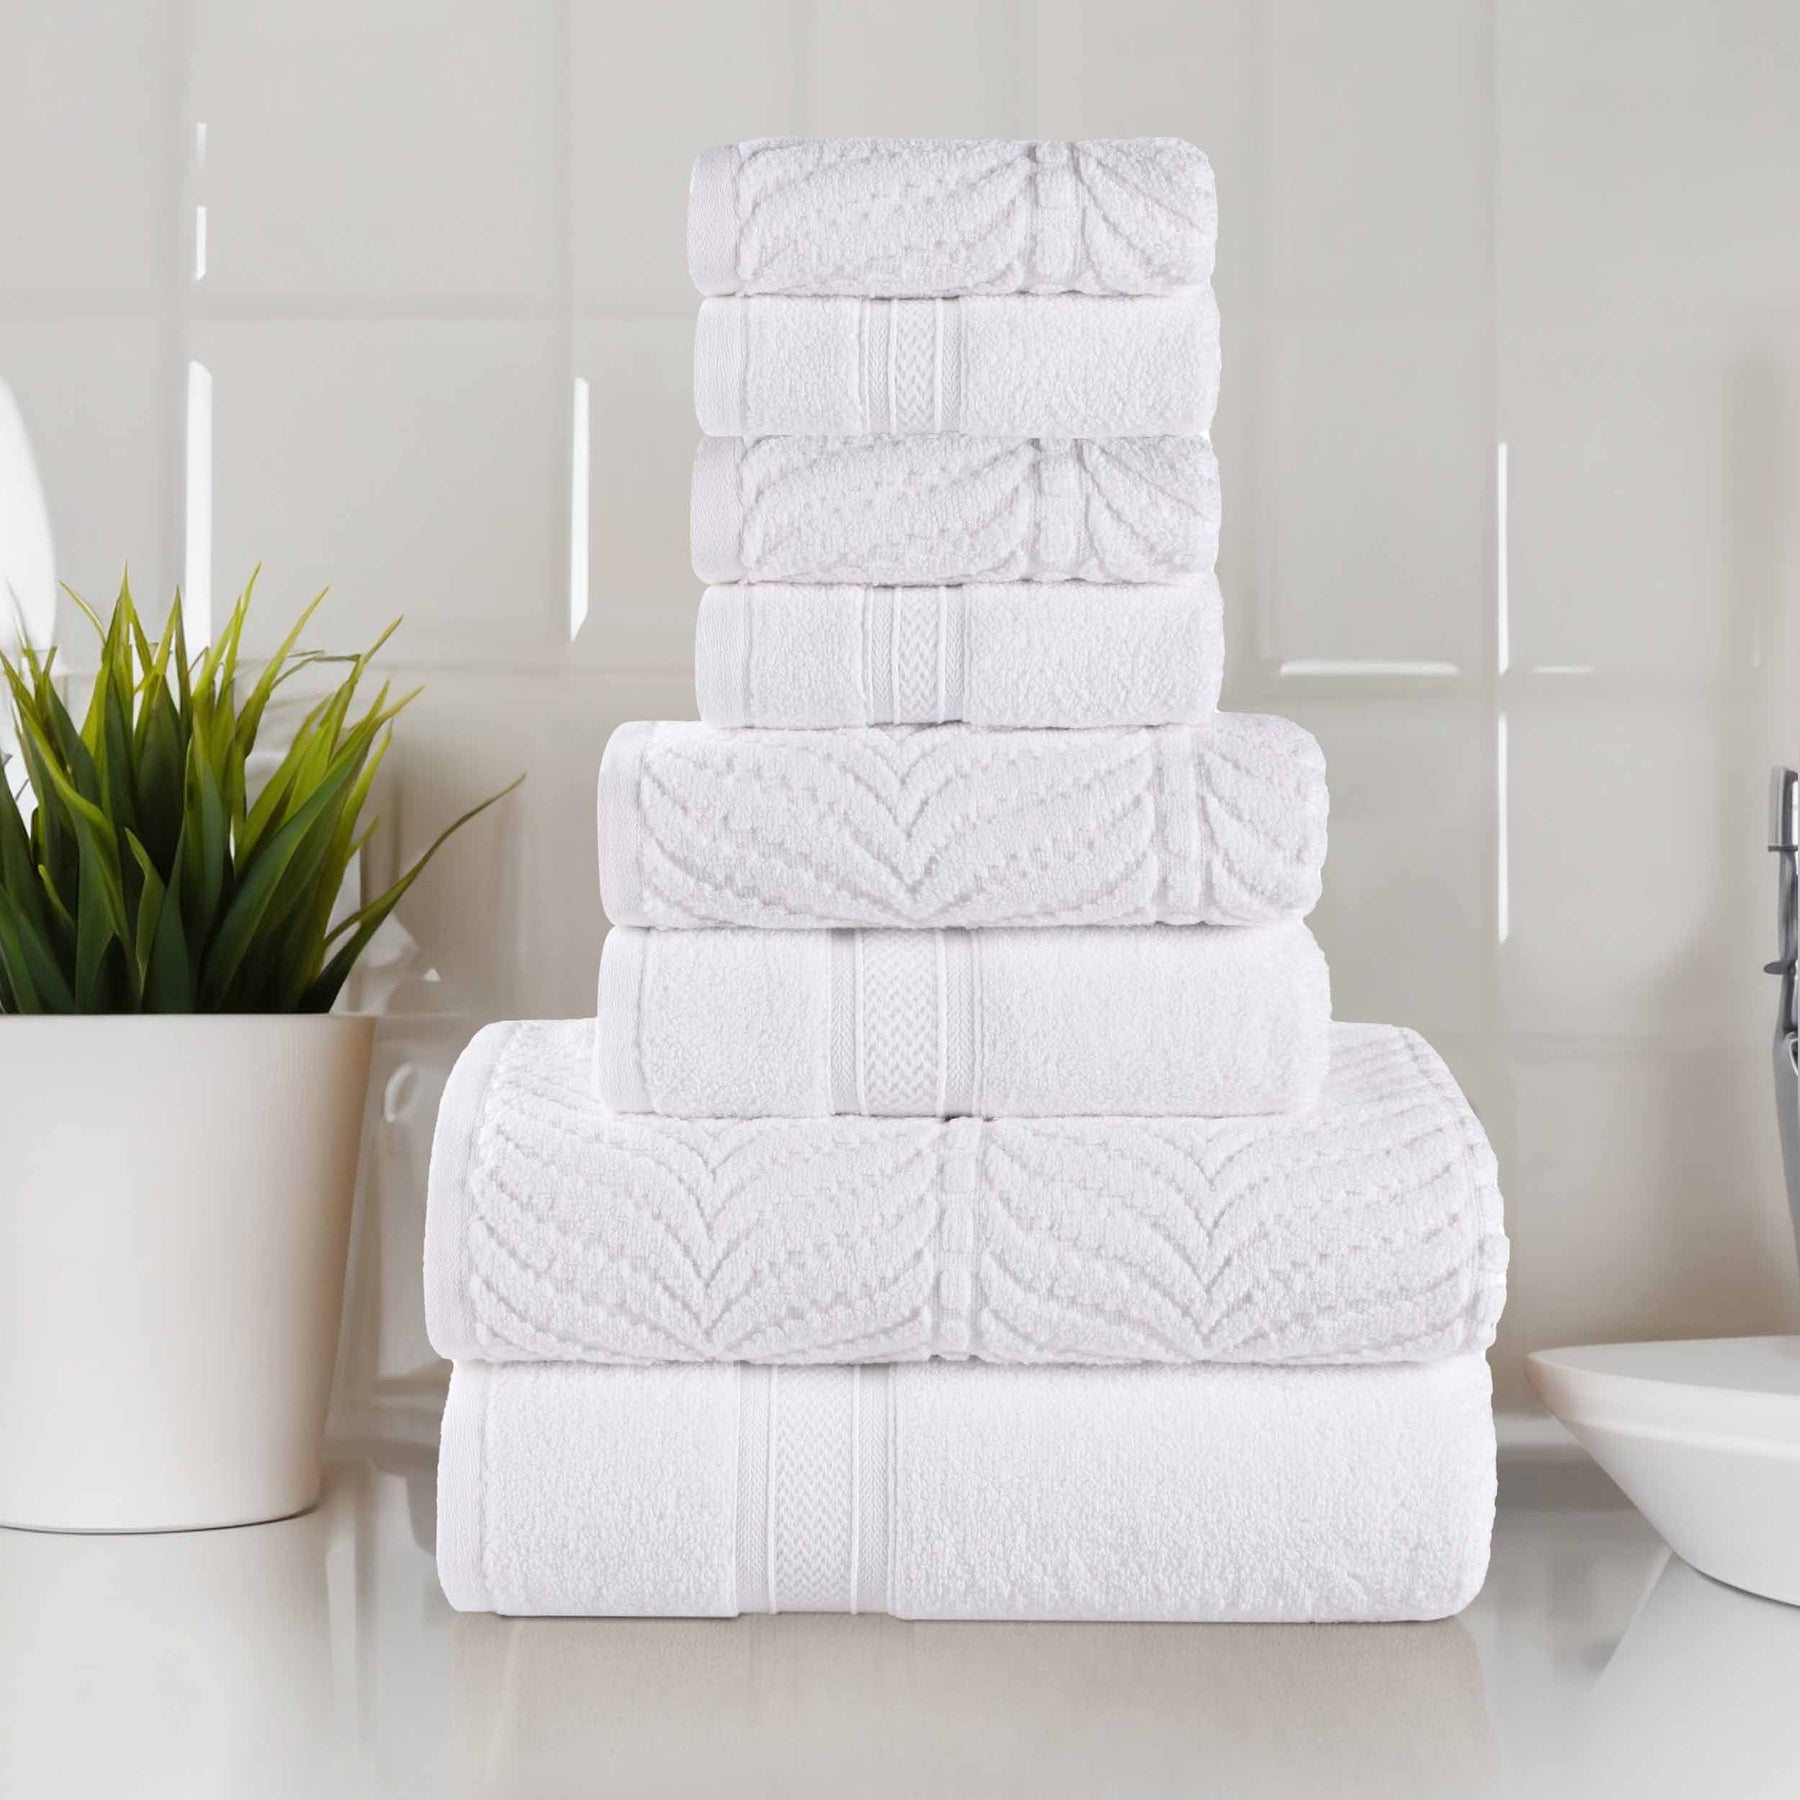 Lane Linen Large Bath Towels - 100% Cotton Bath Sheets, Extra Large Bath Towels, Zero Twist, 4 Piece Bath Sheet Set, Quick Dry, Super Soft Shower